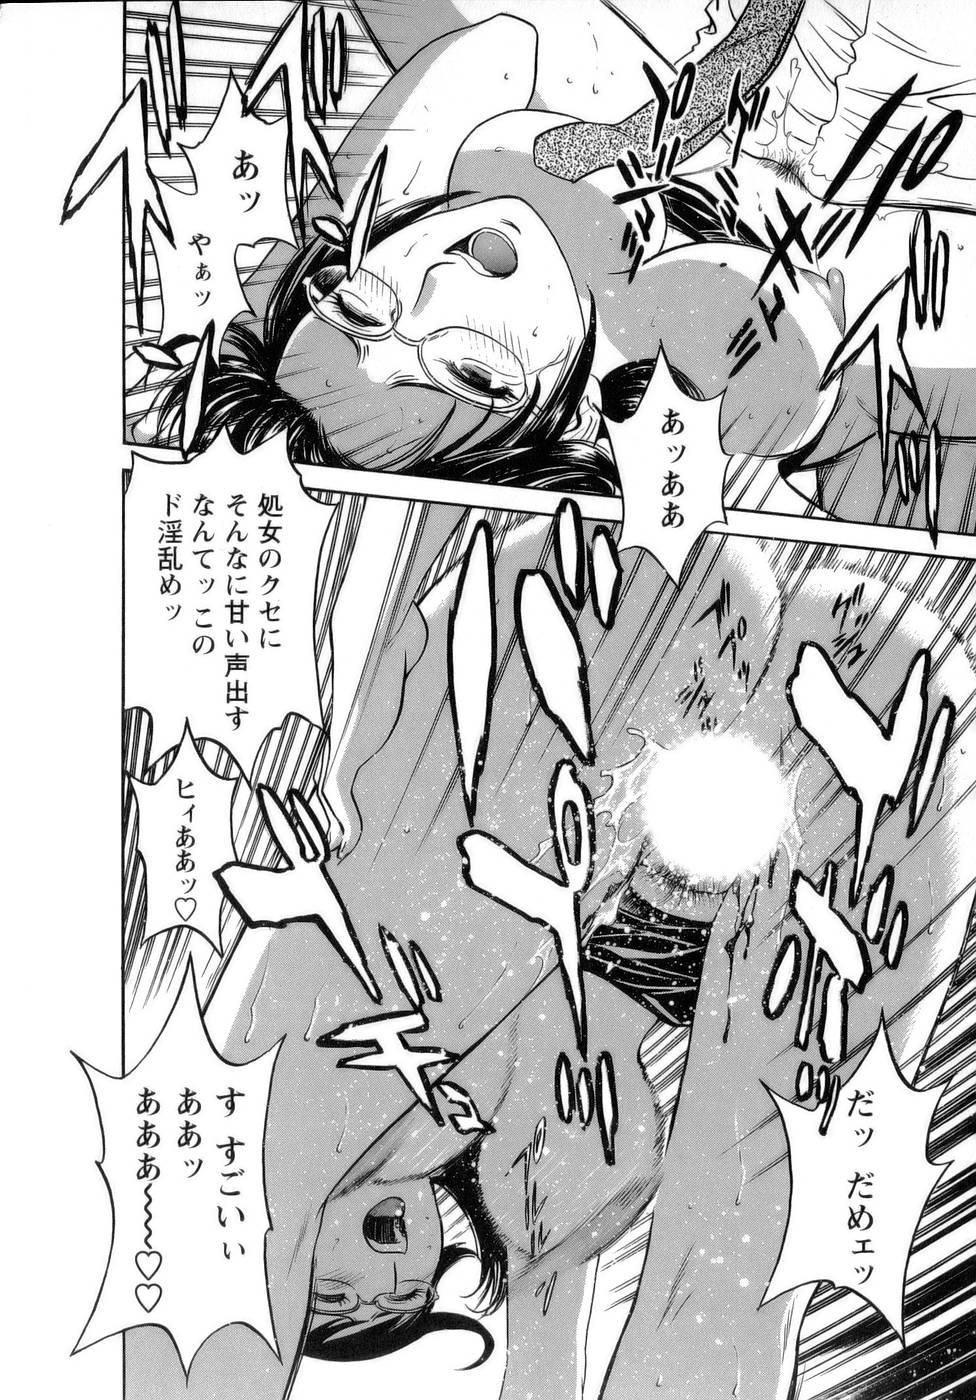 [Hidemaru] Mo-Retsu! Boin Sensei (Boing Boing Teacher) Vol.1 26